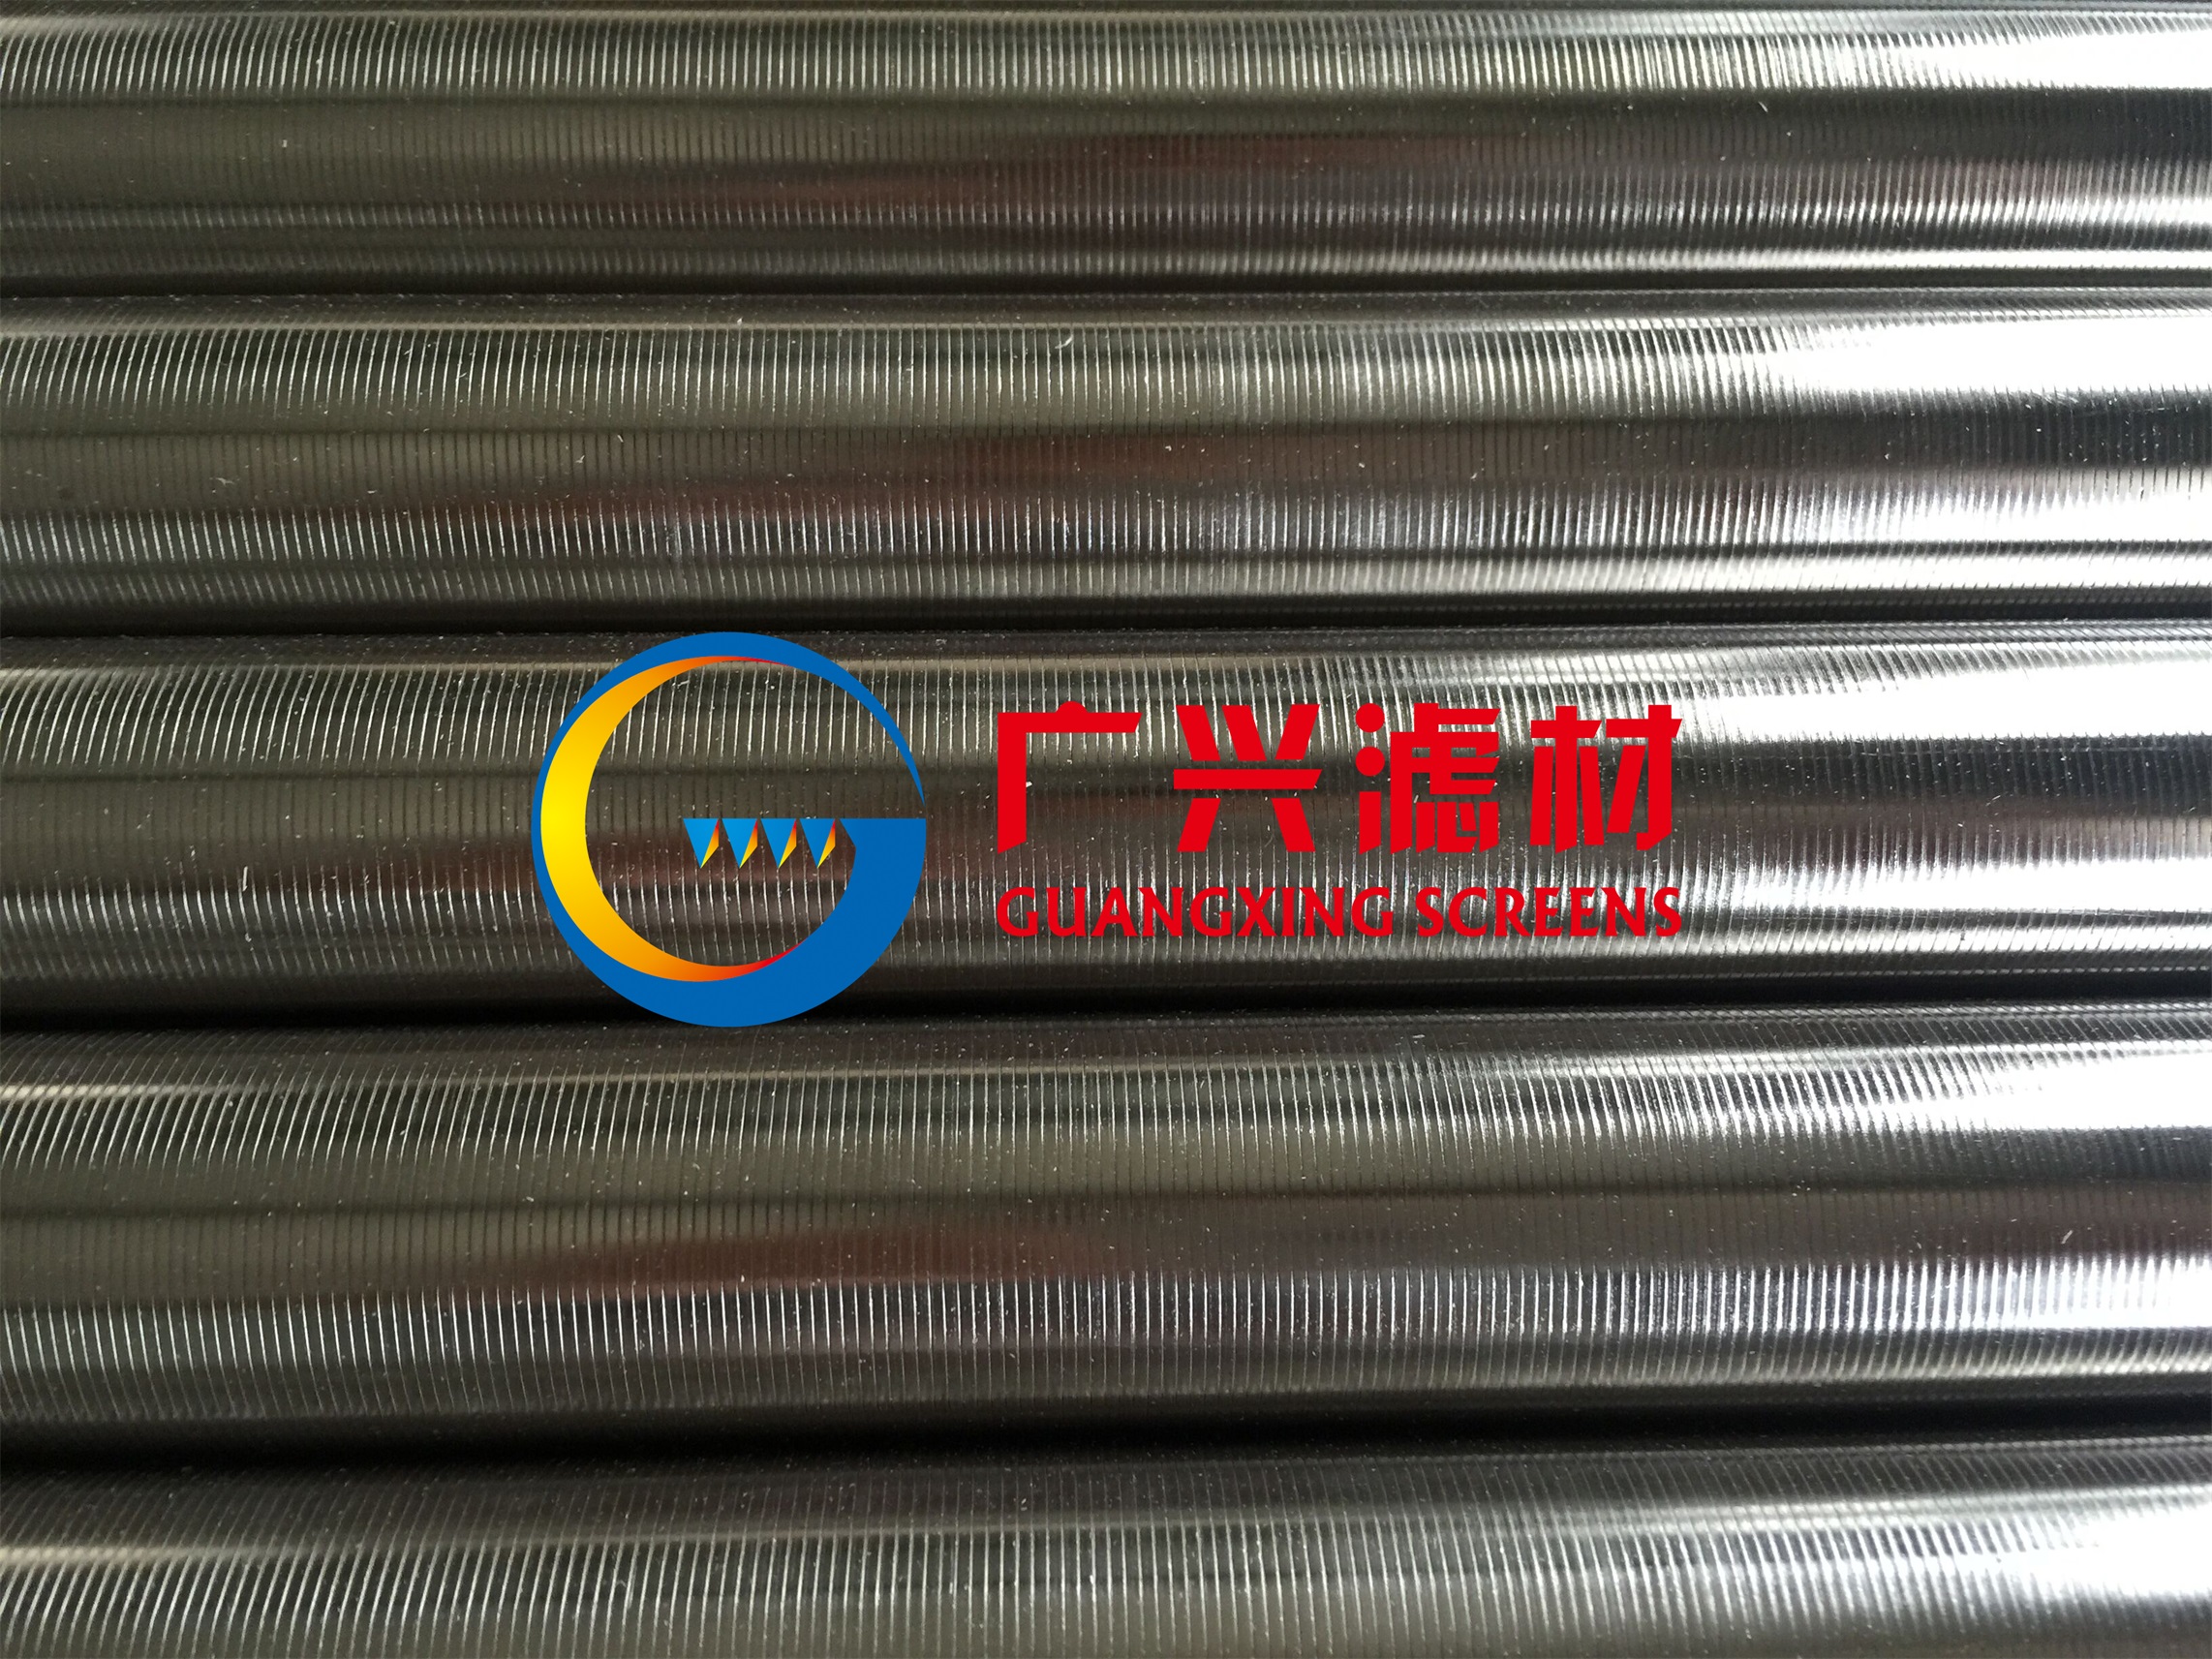 上海楔形网金属滤芯13年厂家生产